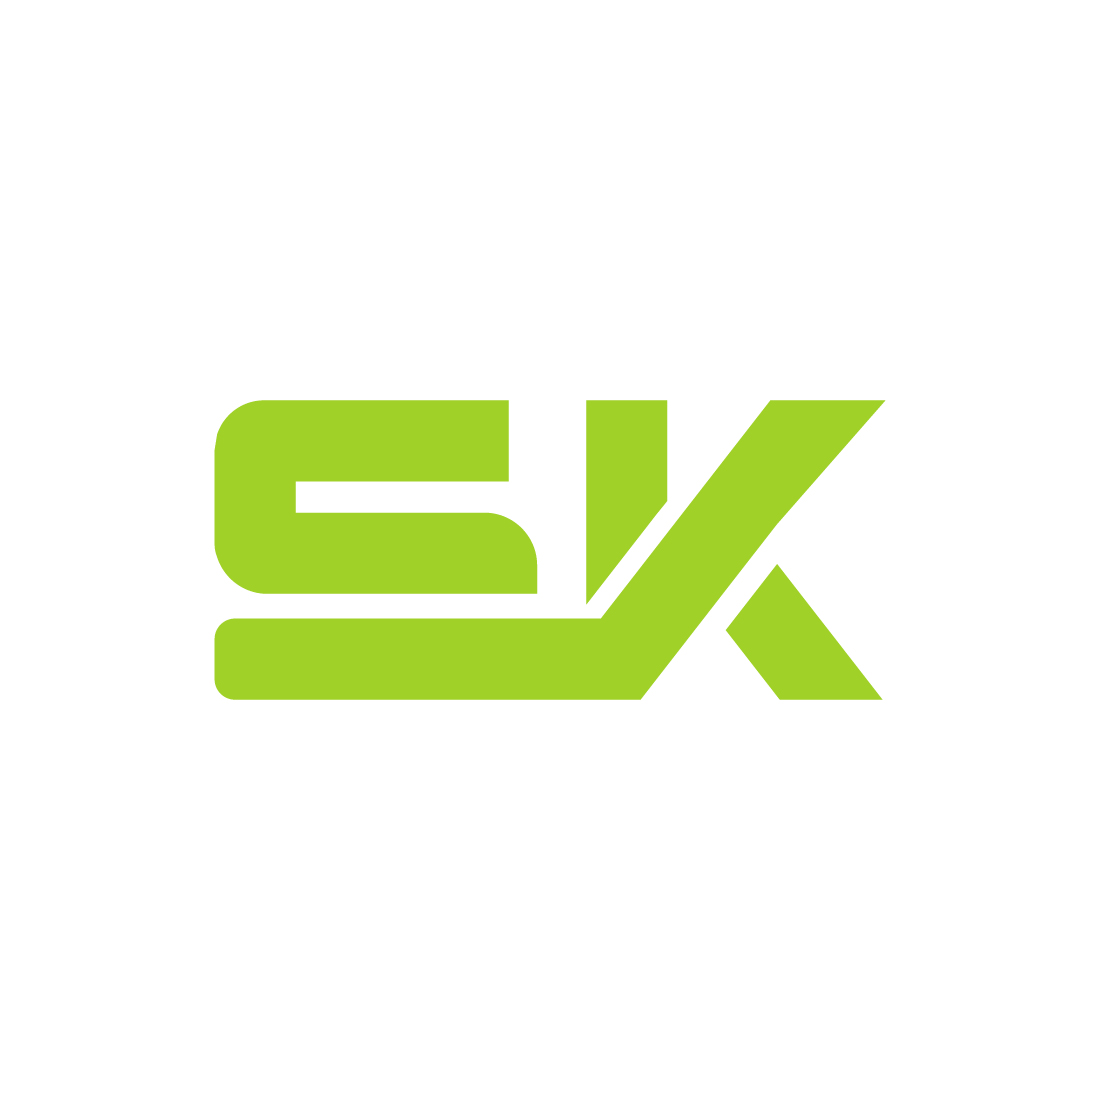 SK Logo Image & Vector for Download | TheHungryJPEG | Sk logo, Logo design,  S logo design